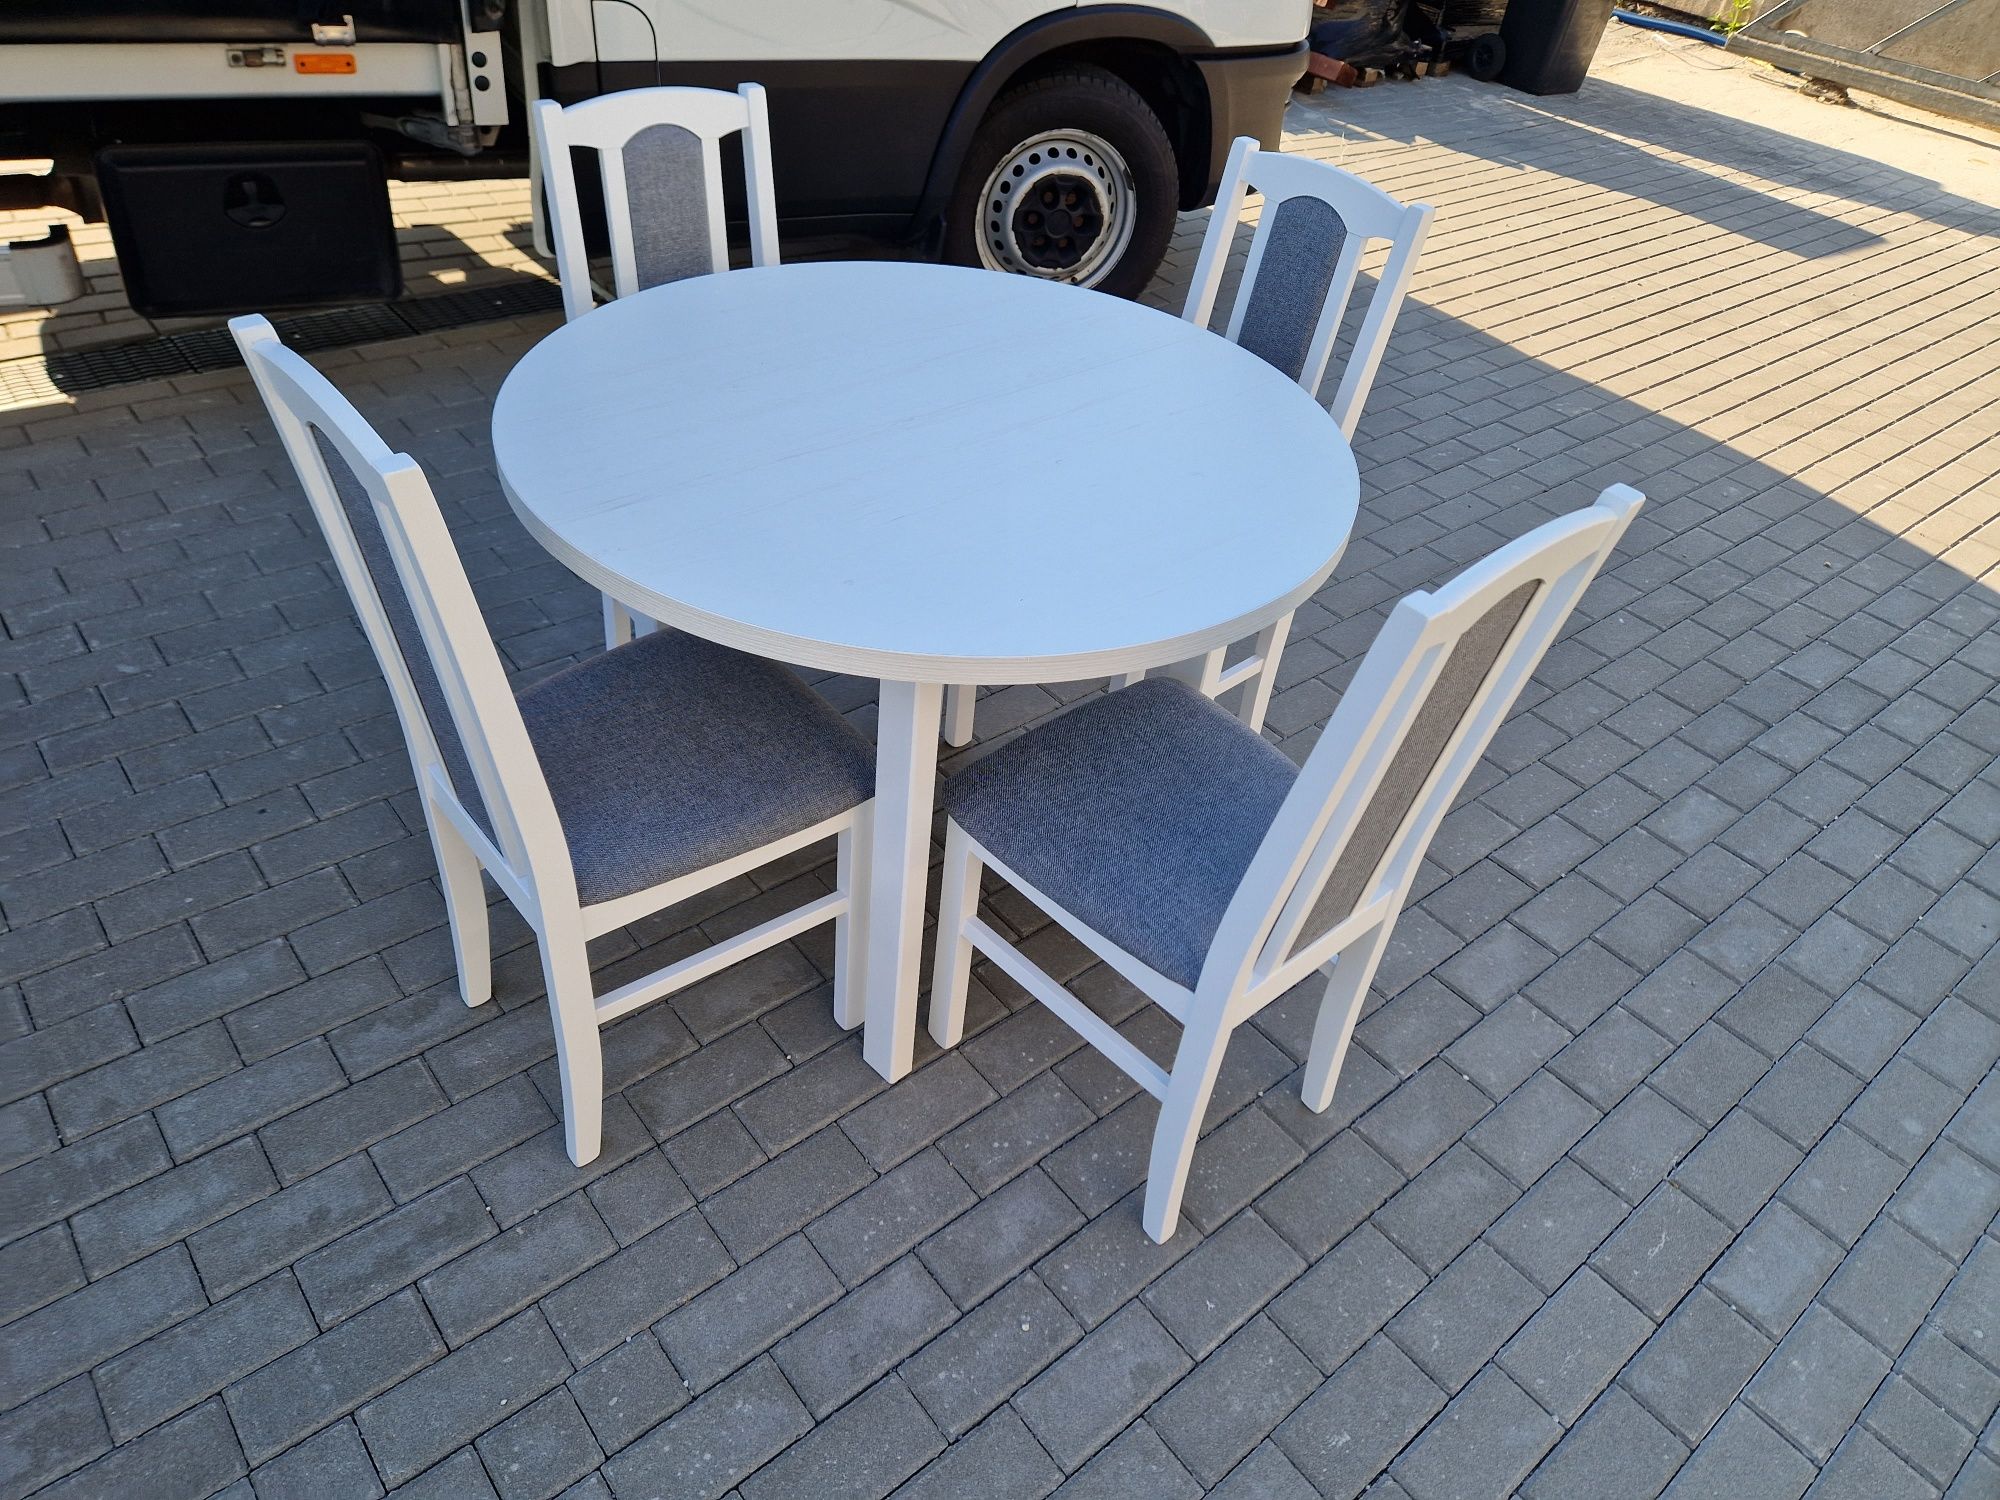 Nowe: Stół okrągły + 4 krzesła, biały + szary, transport cała PL